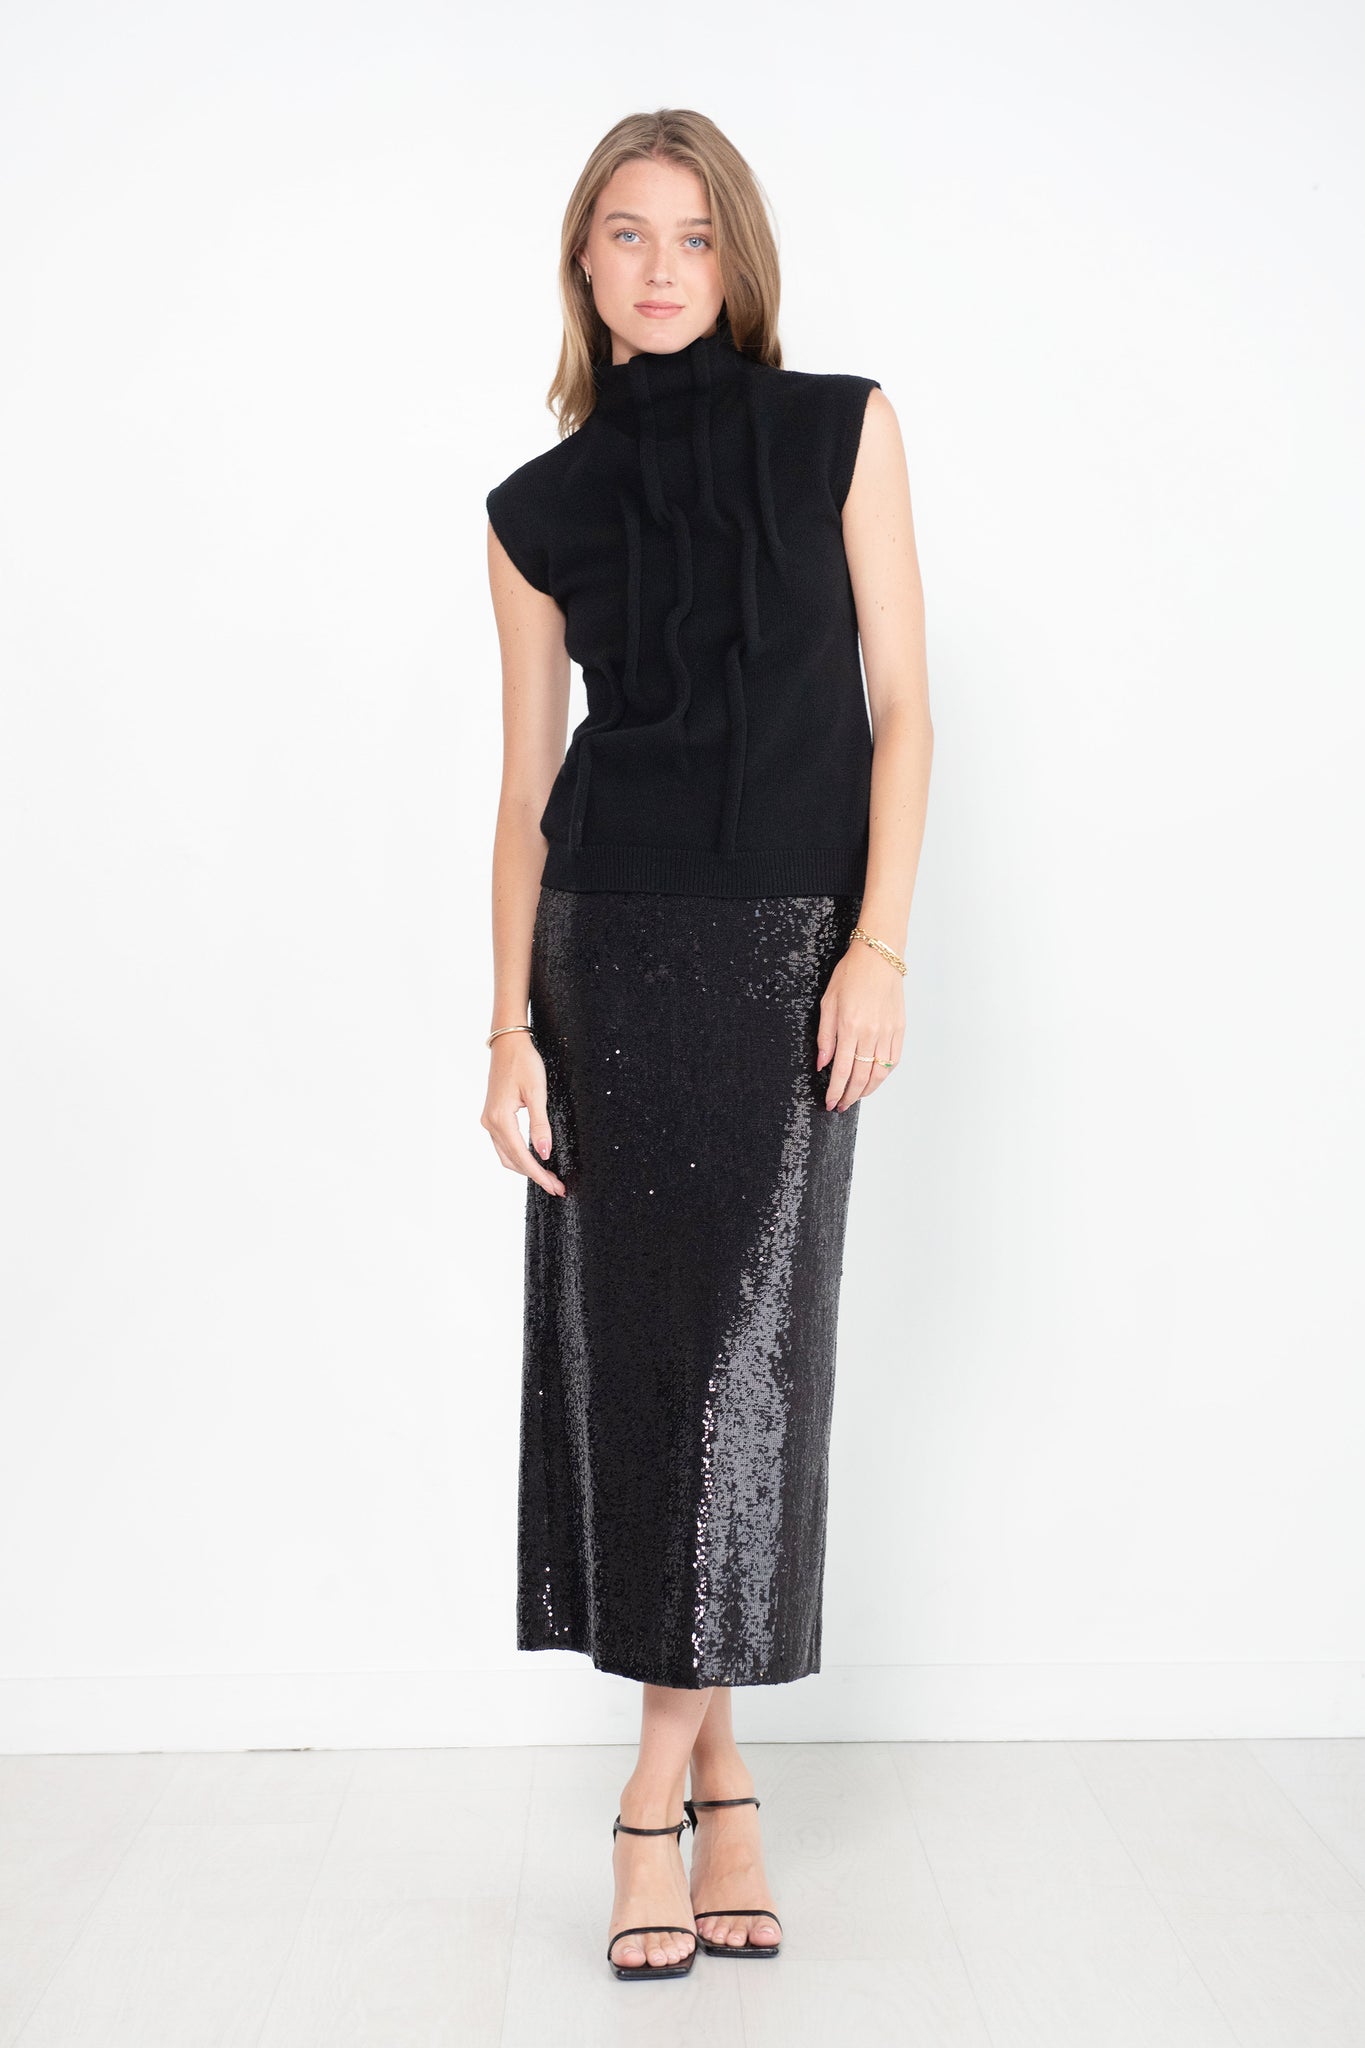 GAUCHERE - Sequin Skirt, Black